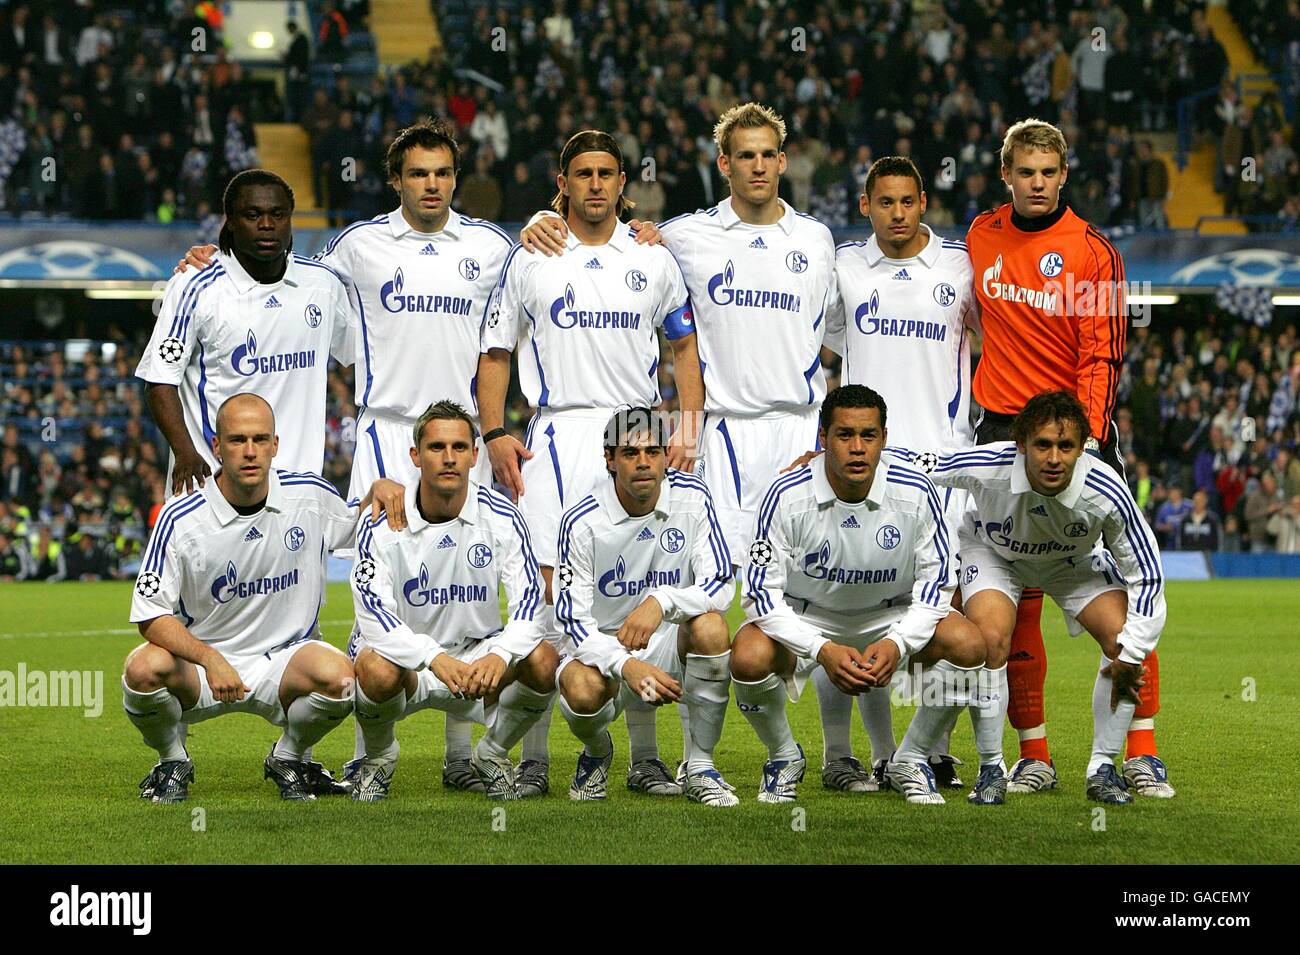 Soccer - UEFA Champions League - Group B - Chelsea v Schalke 04 - Stamford Bridge. Schalke 04 team group Stock Photo